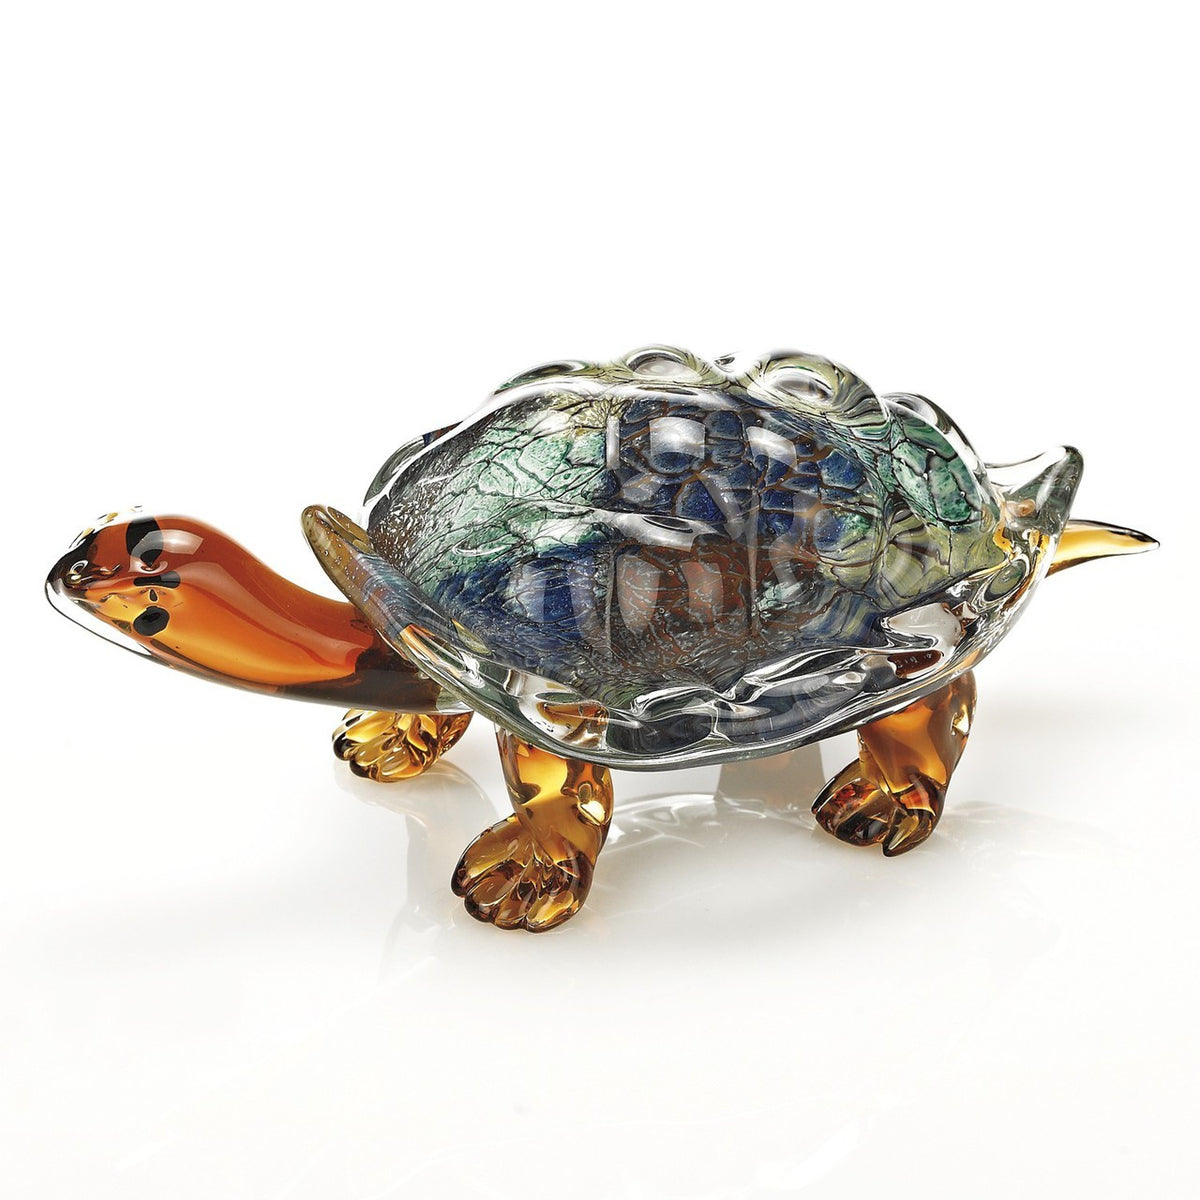 Firestorm Art Glass Turtle L12x6x5 inch